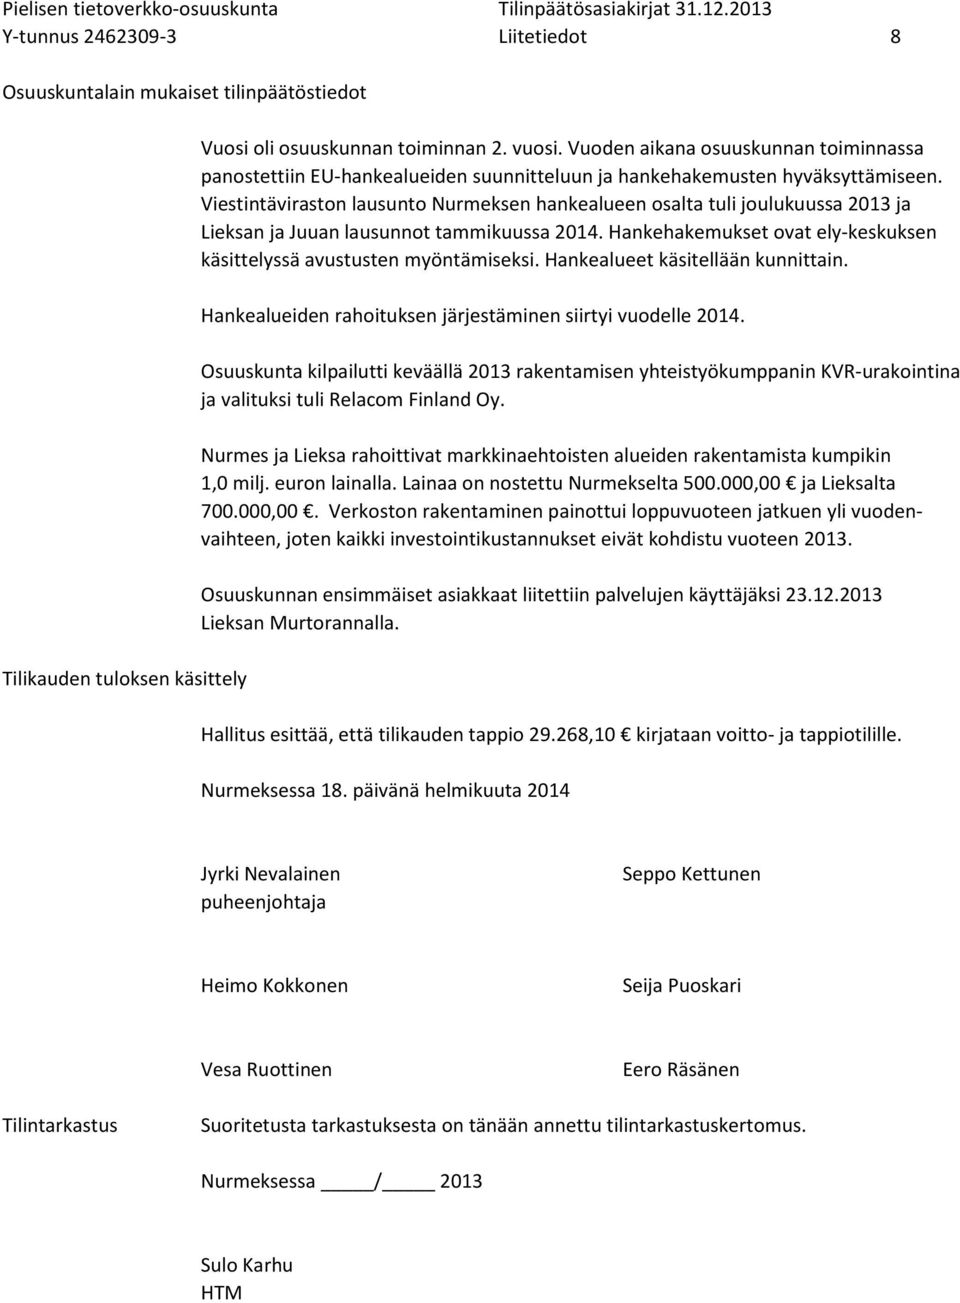 Viestintäviraston lausunto Nurmeksen hankealueen osalta tuli joulukuussa 2013 ja Lieksan ja Juuan lausunnot tammikuussa 2014. Hankehakemukset ovat ely-keskuksen käsittelyssä avustusten myöntämiseksi.